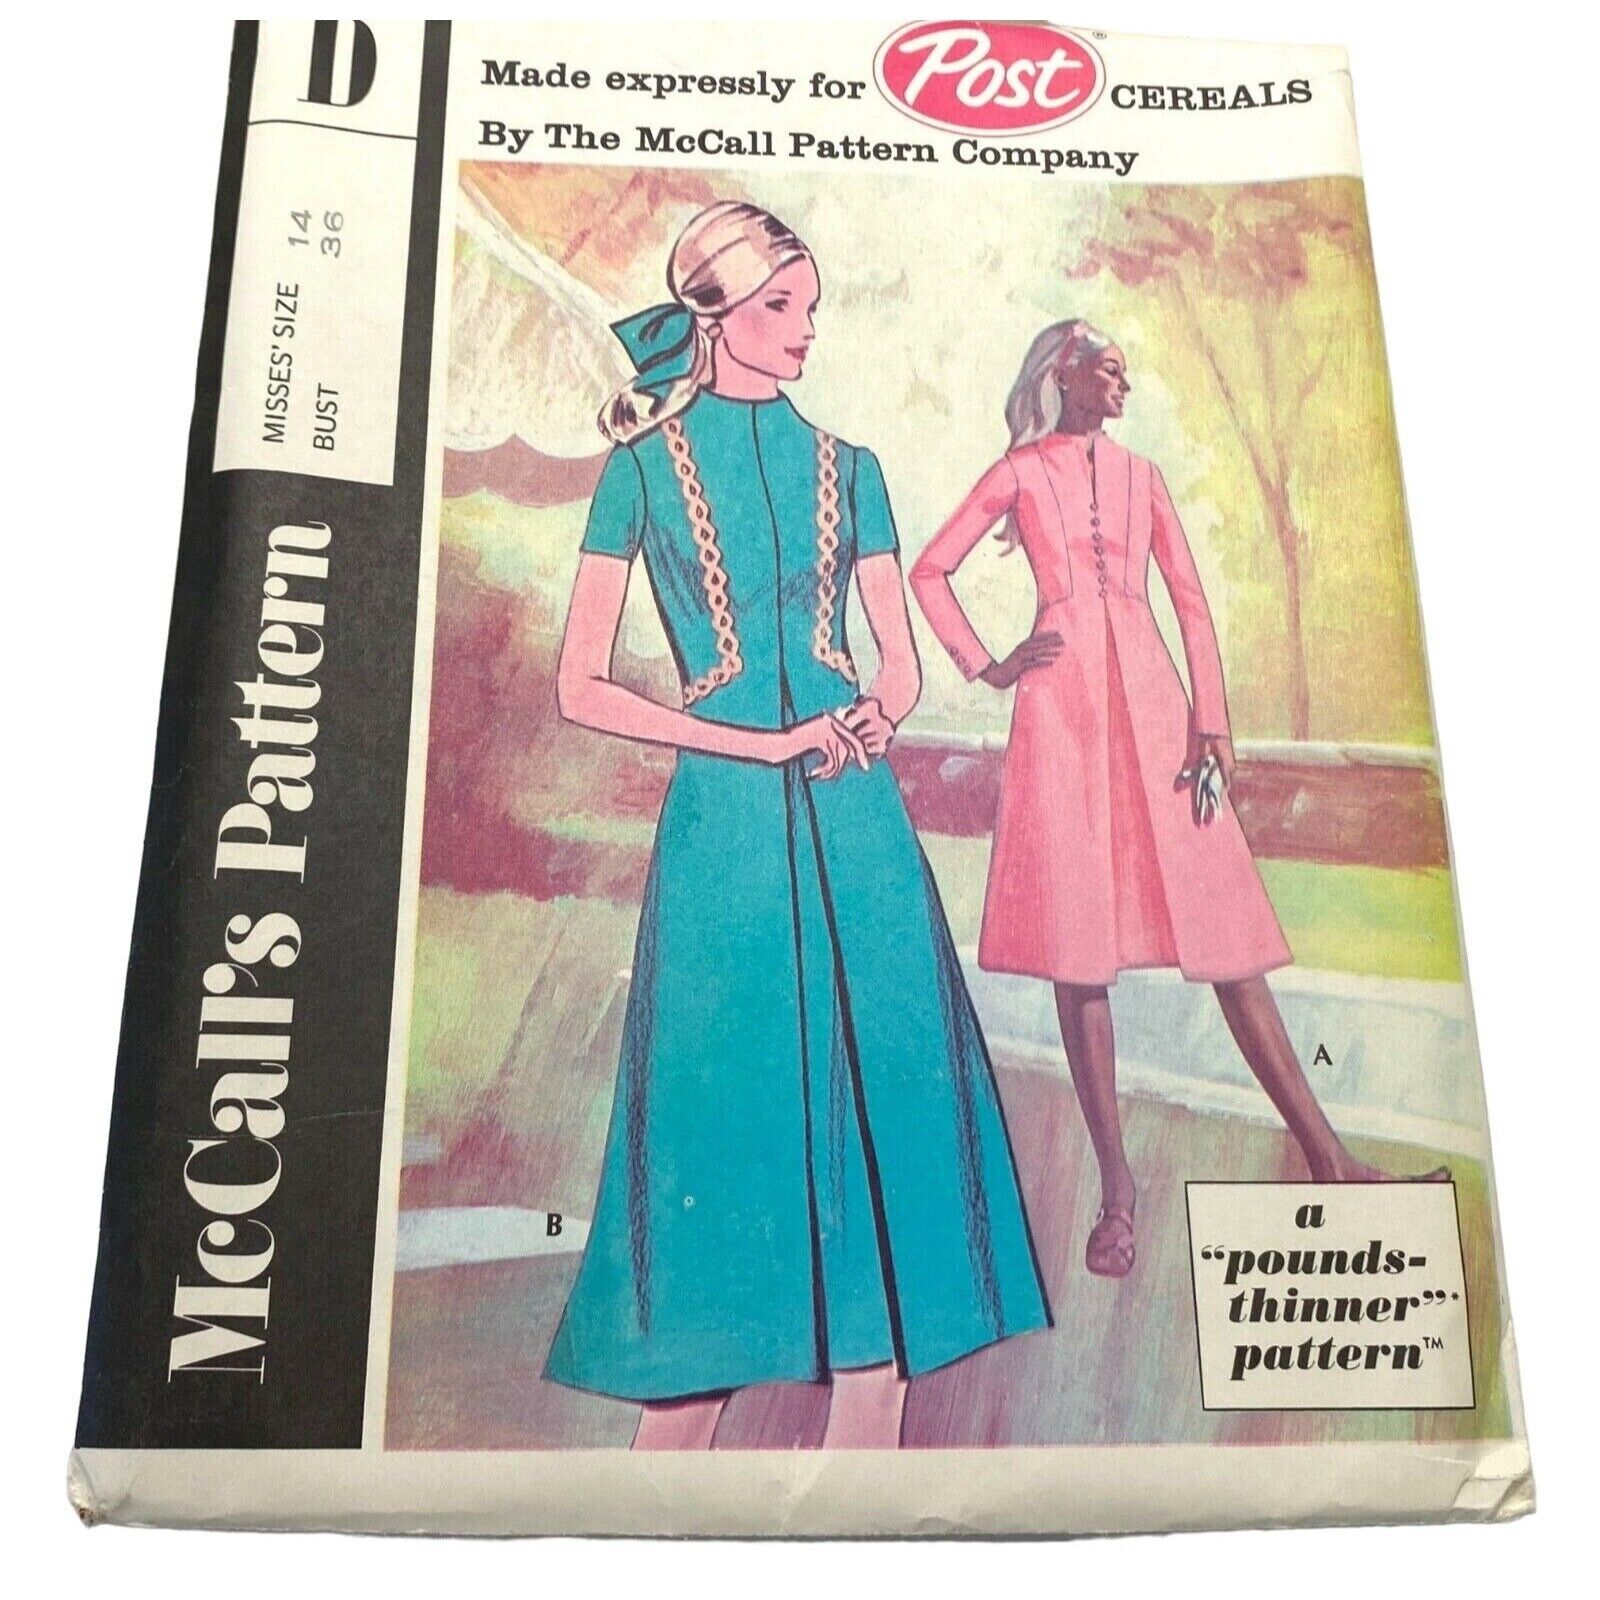 McCalls 2755 Dress Pattern D Version Size 14 Uncut Vintage 1970s Pounds Thinner